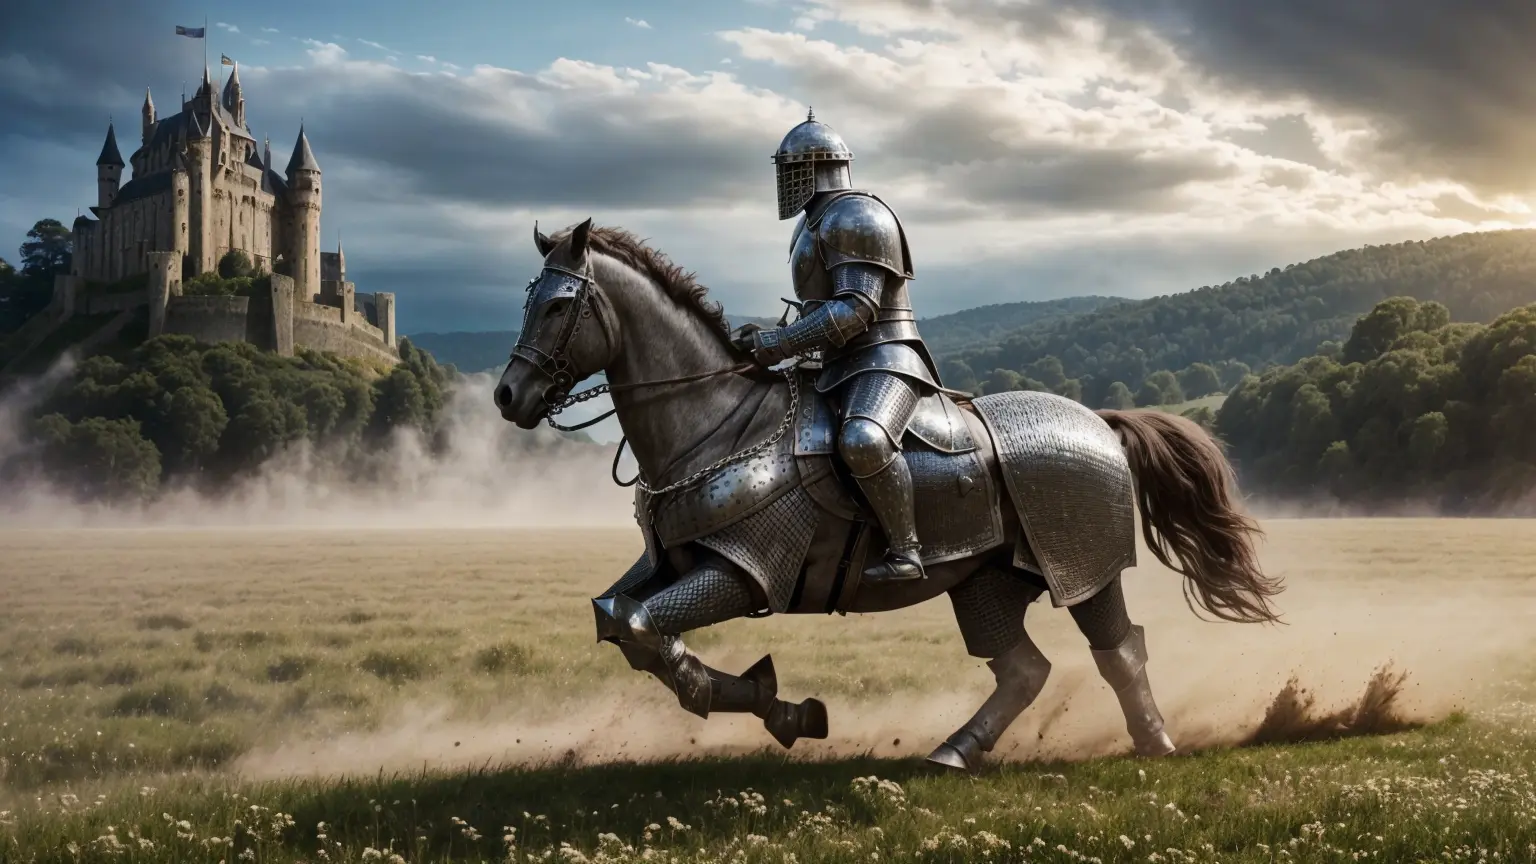 逼真的, 傑作, 電影構圖, 一般拍攝攝影 (在板甲下穿著灰色金屬鏈甲的中世紀騎士衝鋒, 激烈地喊叫, 騎在一匹驕傲而威嚴的戰馬上，全速馳騁在草地上:1.3), (揚起巨大的塵土，隨之而來的是土塊散落:1.3), (真實、詳細|複雜的盔甲, 真實、詳細|複雜的灰色金屬鏈甲:1.2), (逼真的 musculature, 細緻的肌膚, 肌理, 天然皮肤), (高活性成分), 皮肤瑕疵, 天然皮肤 wrinkles, (天然皮肤 spots:0.4), 非常詳細 clothes, 豐富的細節, 錯綜複雜的細節, 衣服上真實的皺紋, 奇幻风景, 多雲的天空, 遠處的城堡, 輻射照明, 深陰影, 戲劇性的場景, 深色調色板, 詳細的景觀, 體積照明, (詳細的照明), 盔甲上的詳細光反射, 8K, 非常詳細, 超高畫質, 高動態範圍